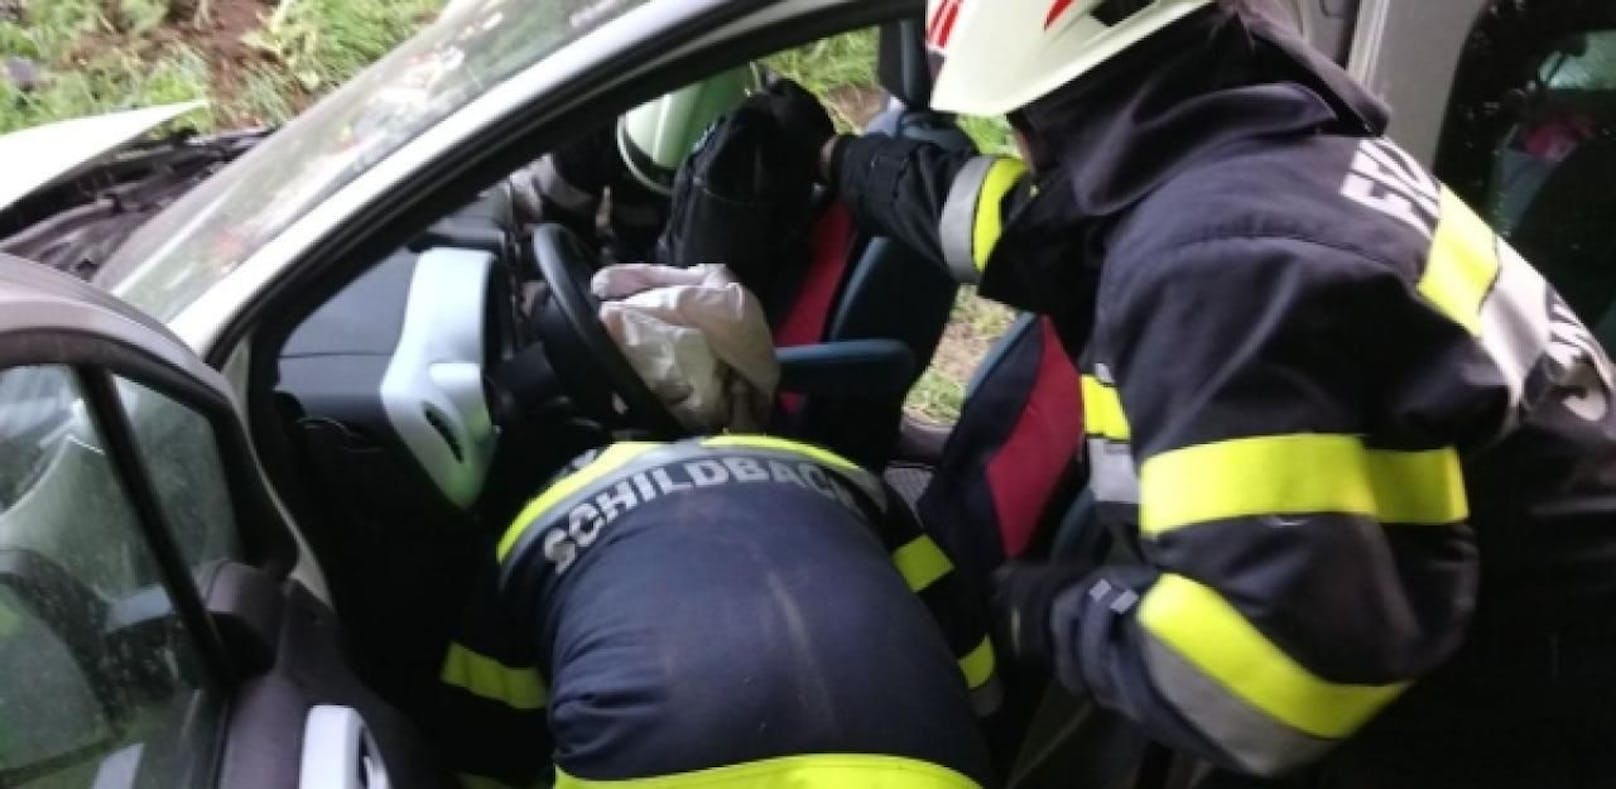 Wiener übersieht Pkw: Fünf Verletzte bei Crash